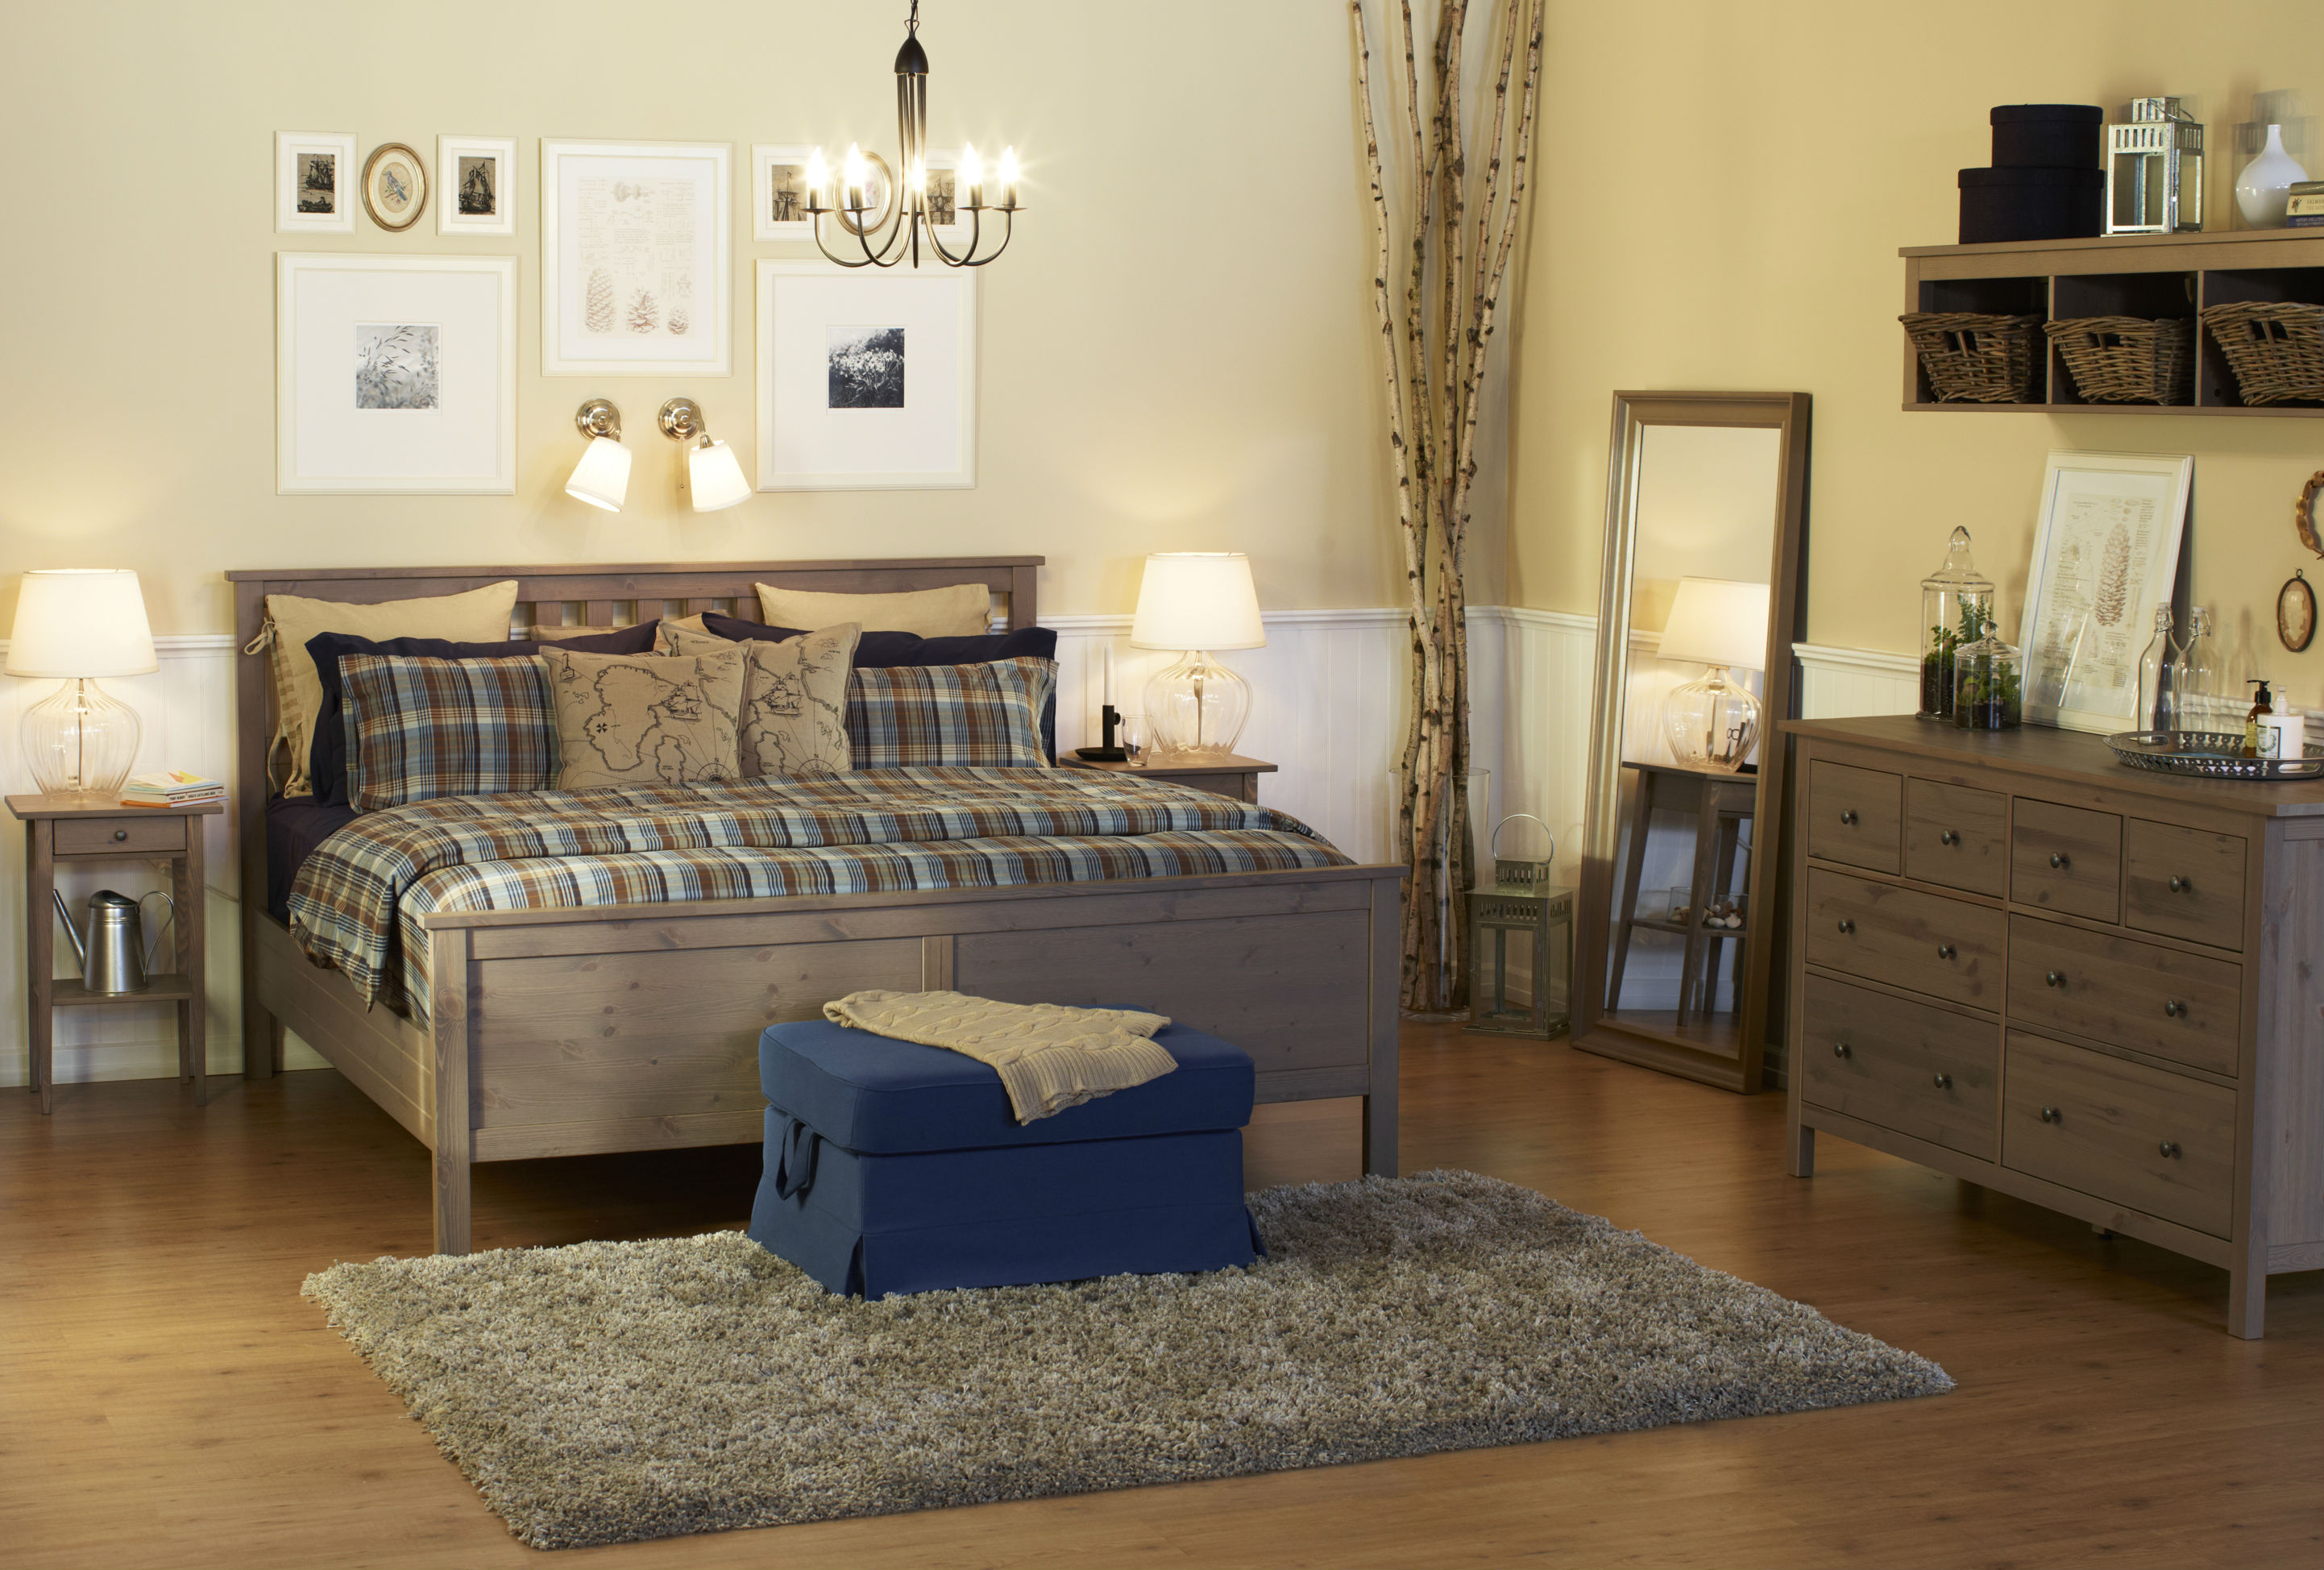 ikea hemnes bedroom grey furniture